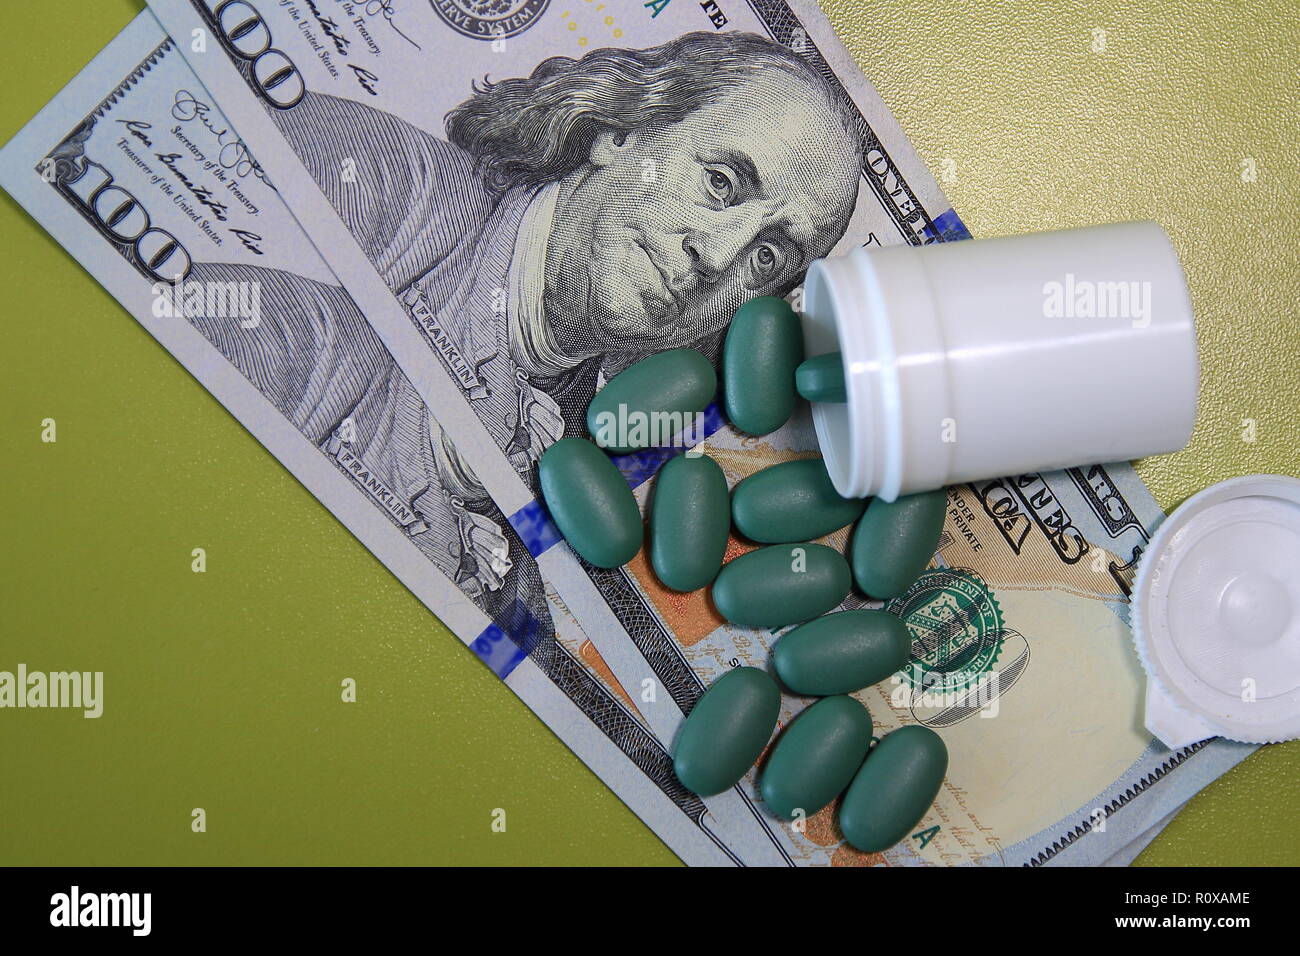 Stapel der pharmazeutischen Arzneimittel oder Medikament Pillen auf Dollar bill Kosten im Gesundheitswesen und Krankenversicherung Konzept Stockfoto